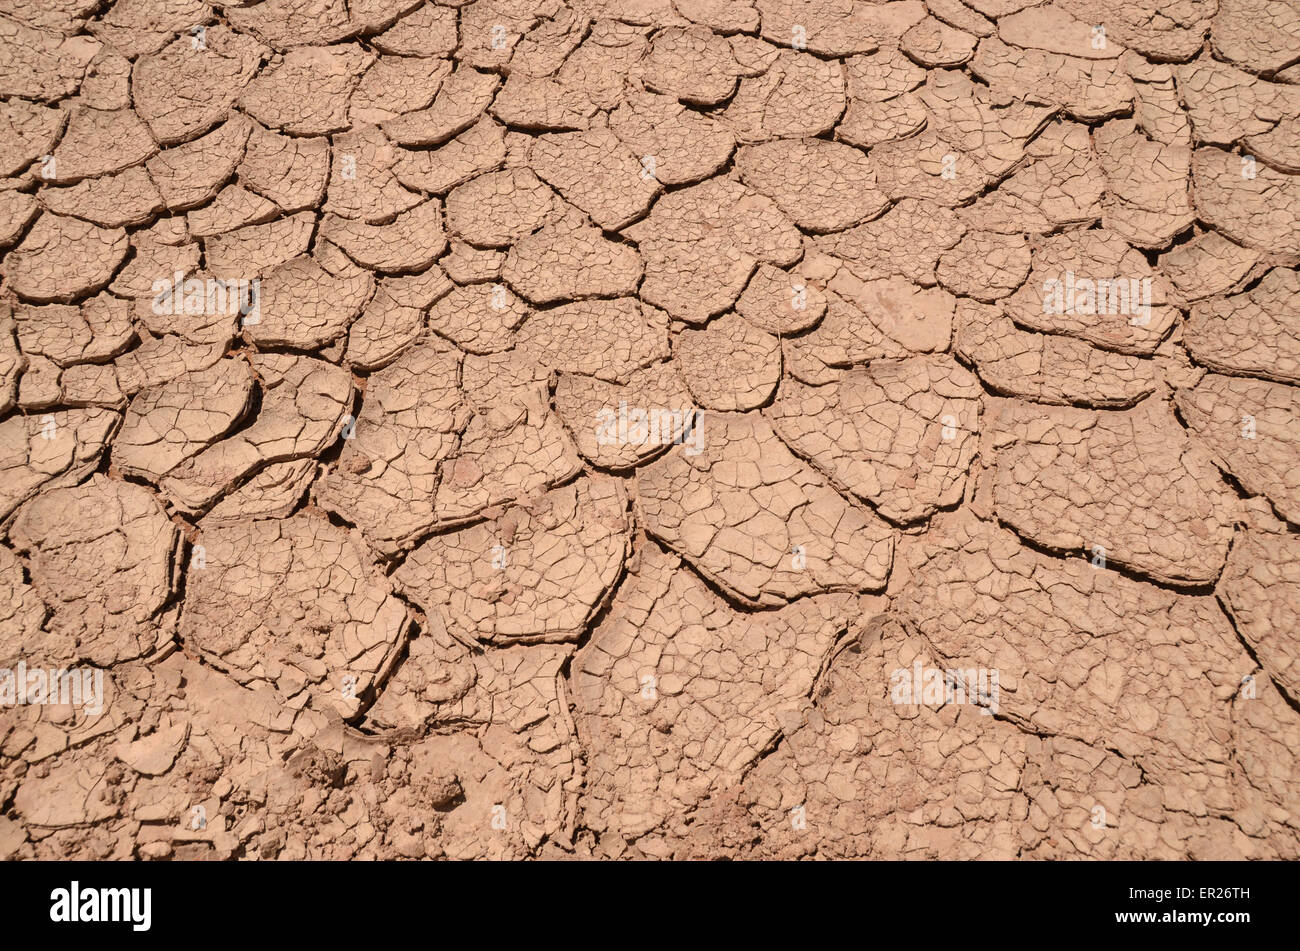 Cracked soil in the Gobi desert, Omnogovi province, southern Mongolia. Stock Photo